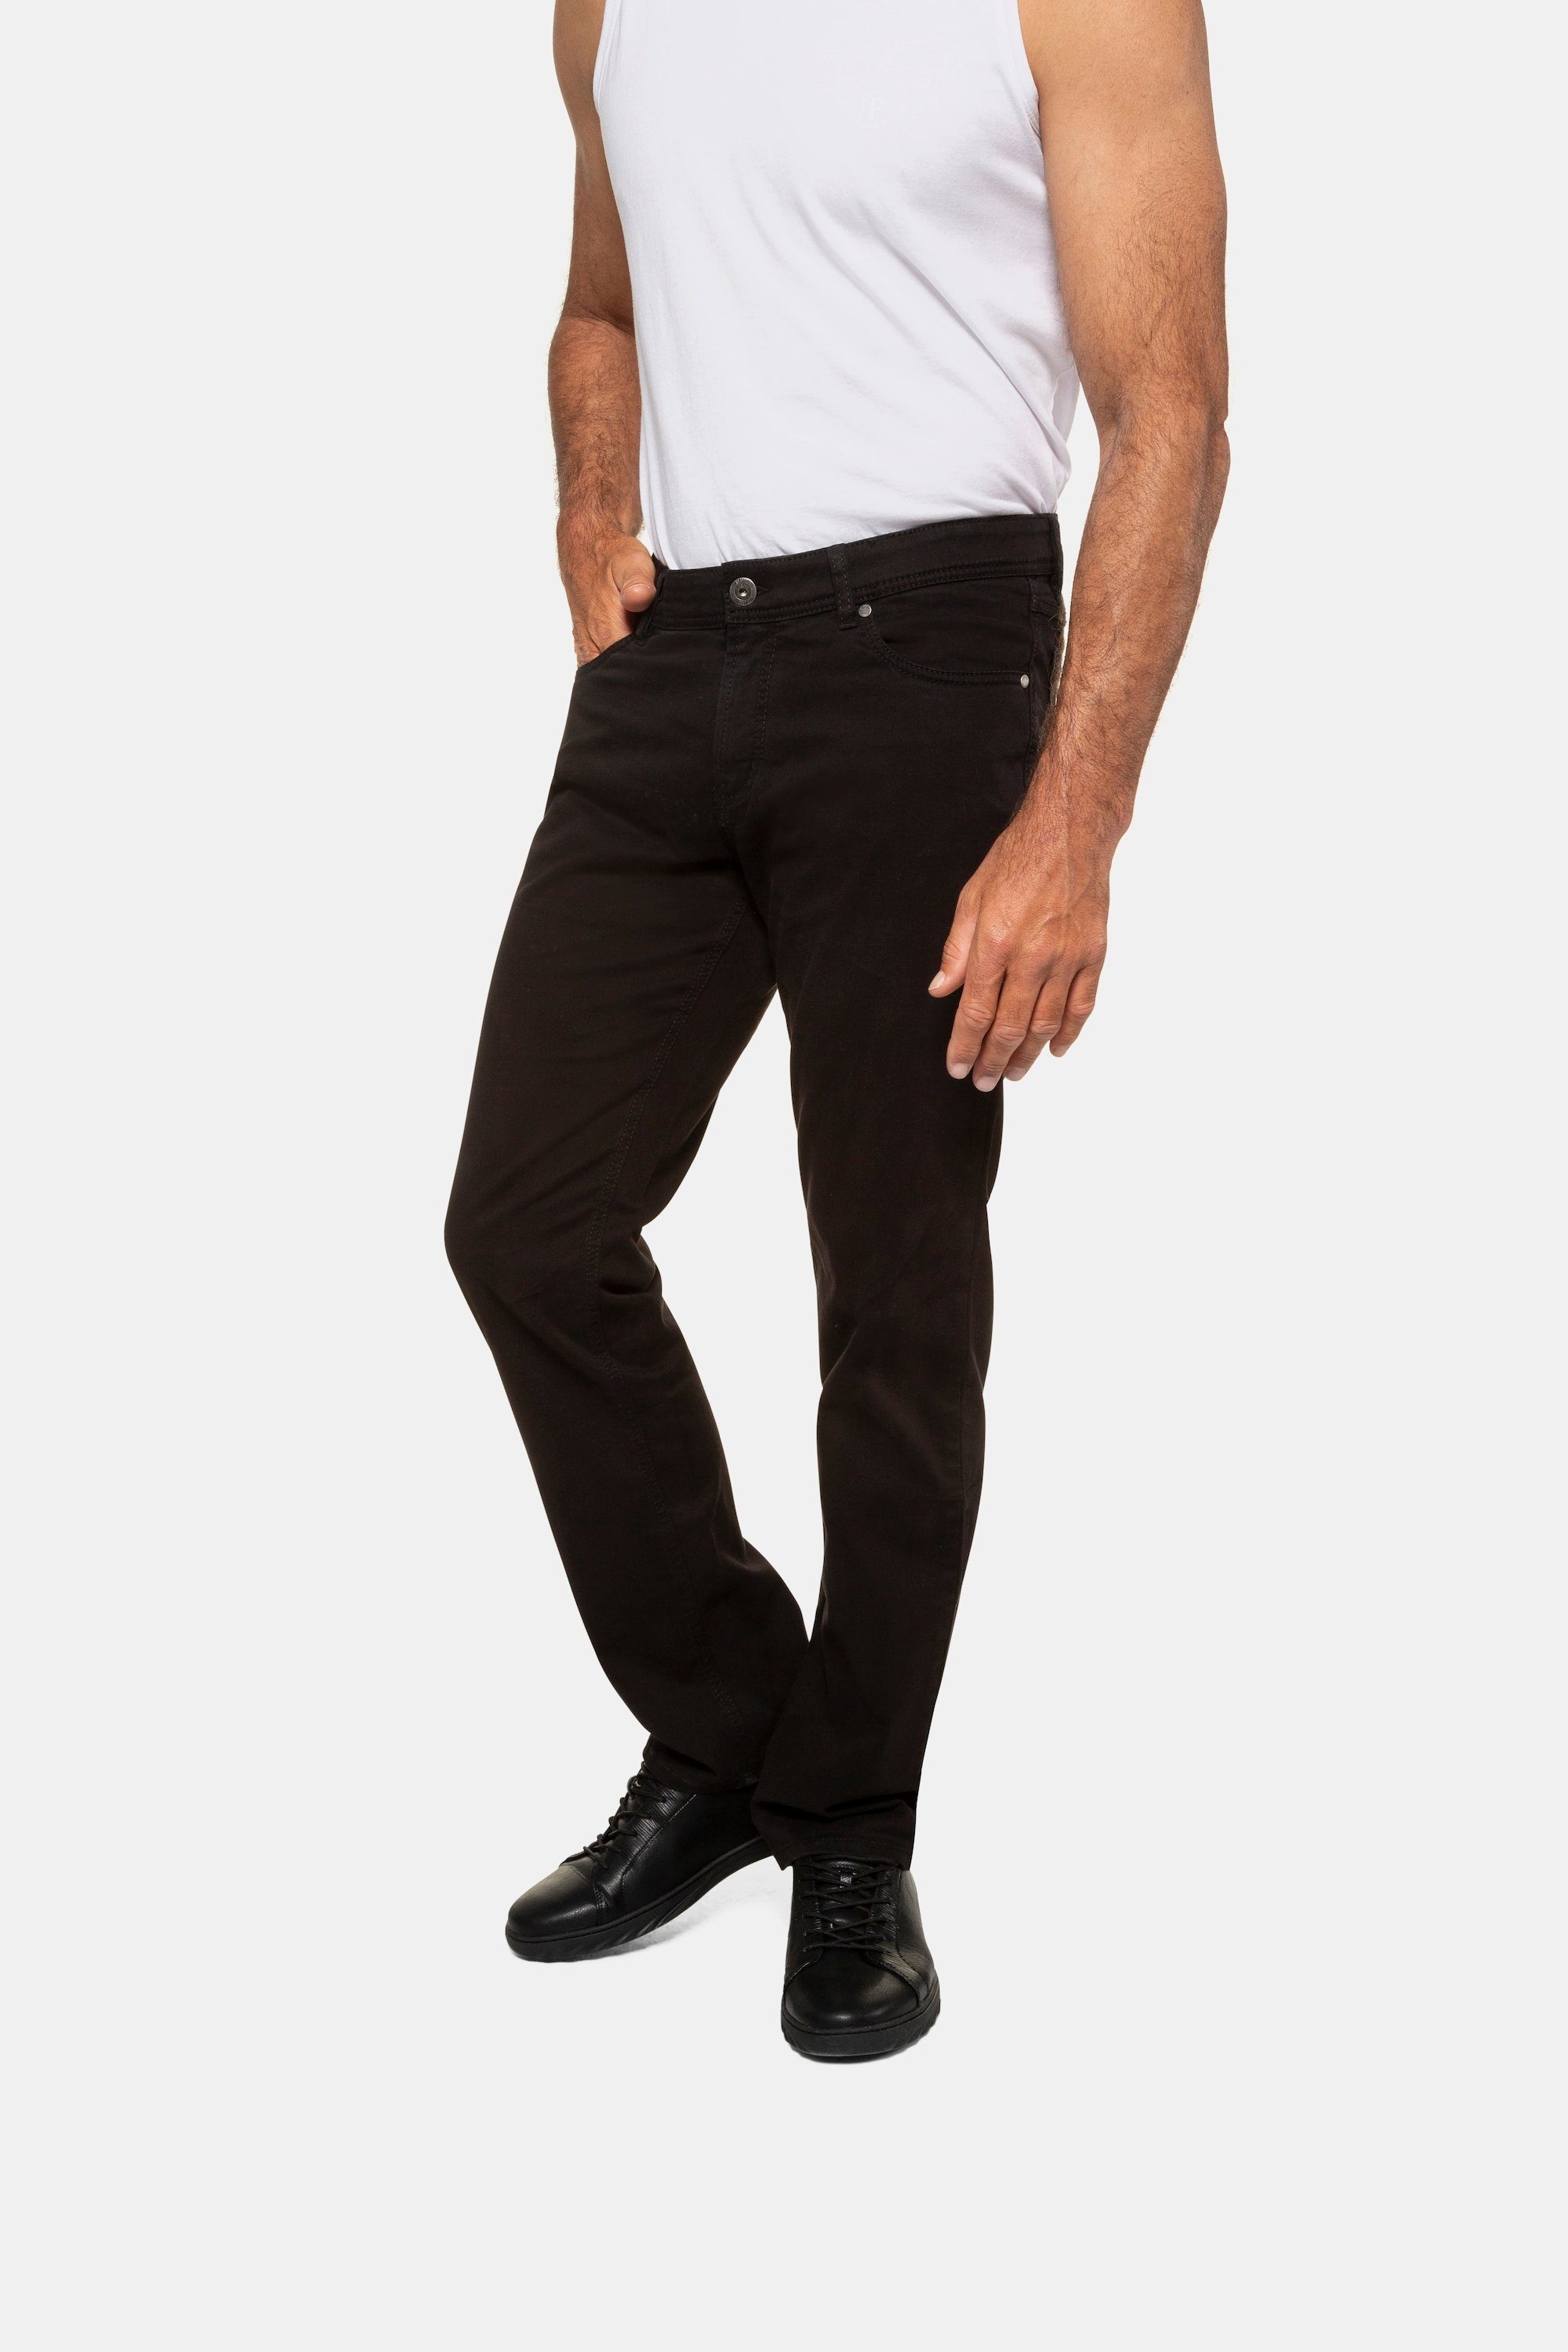 JP1880 5-Pocket-Jeans Twillhose Bauchfit bis Größe N-70/U-35 schwarz